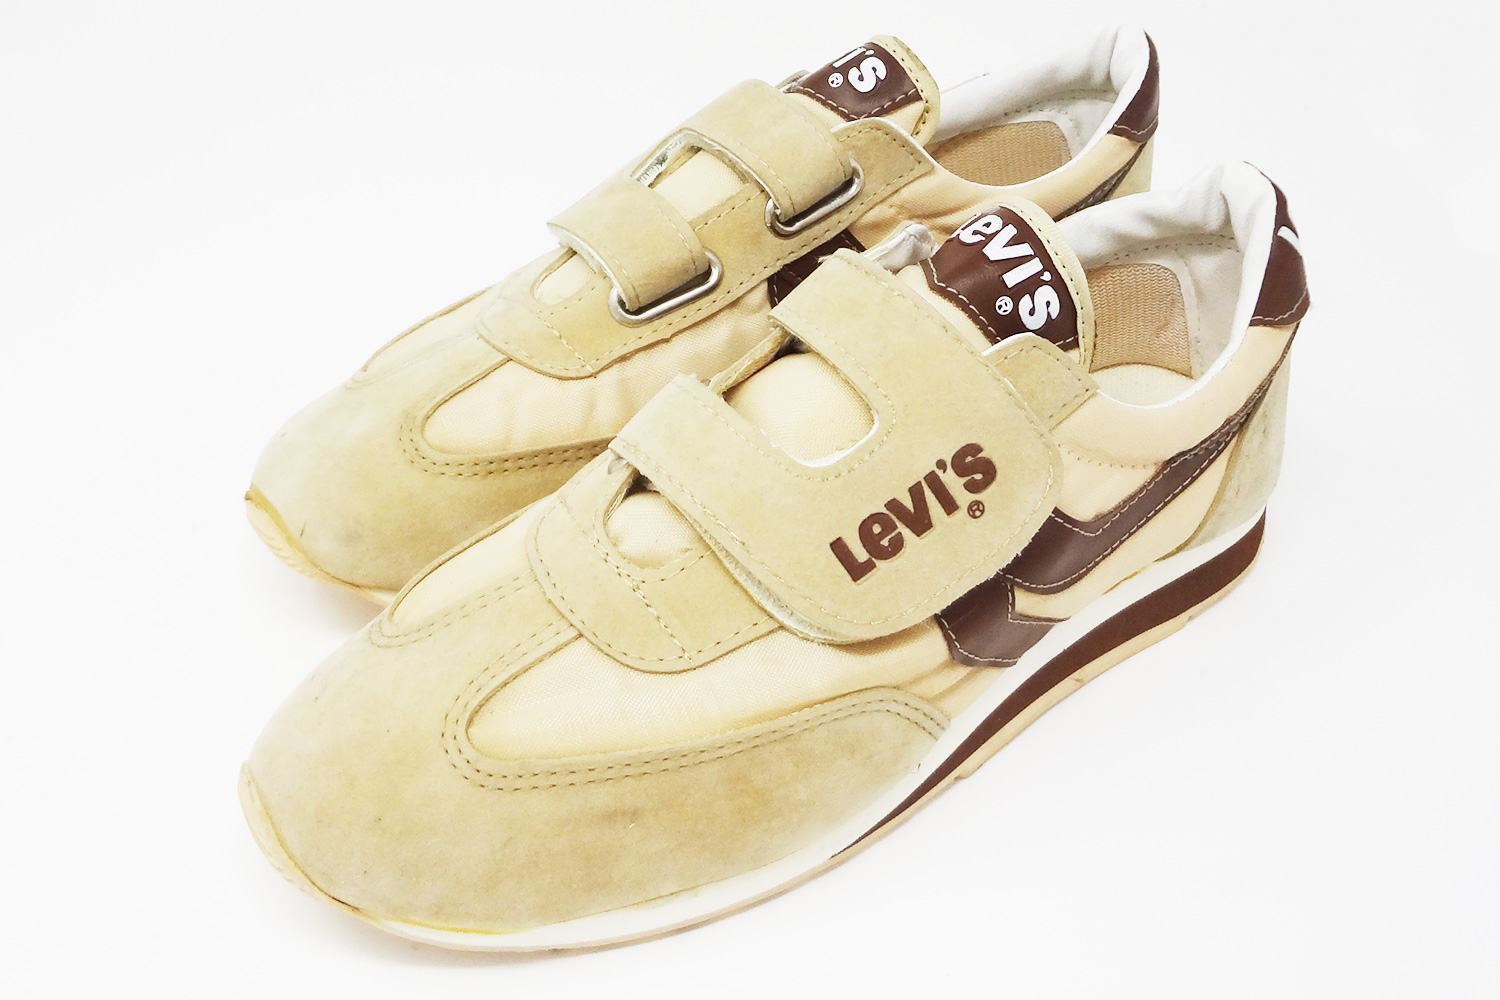 levis velcro shoes